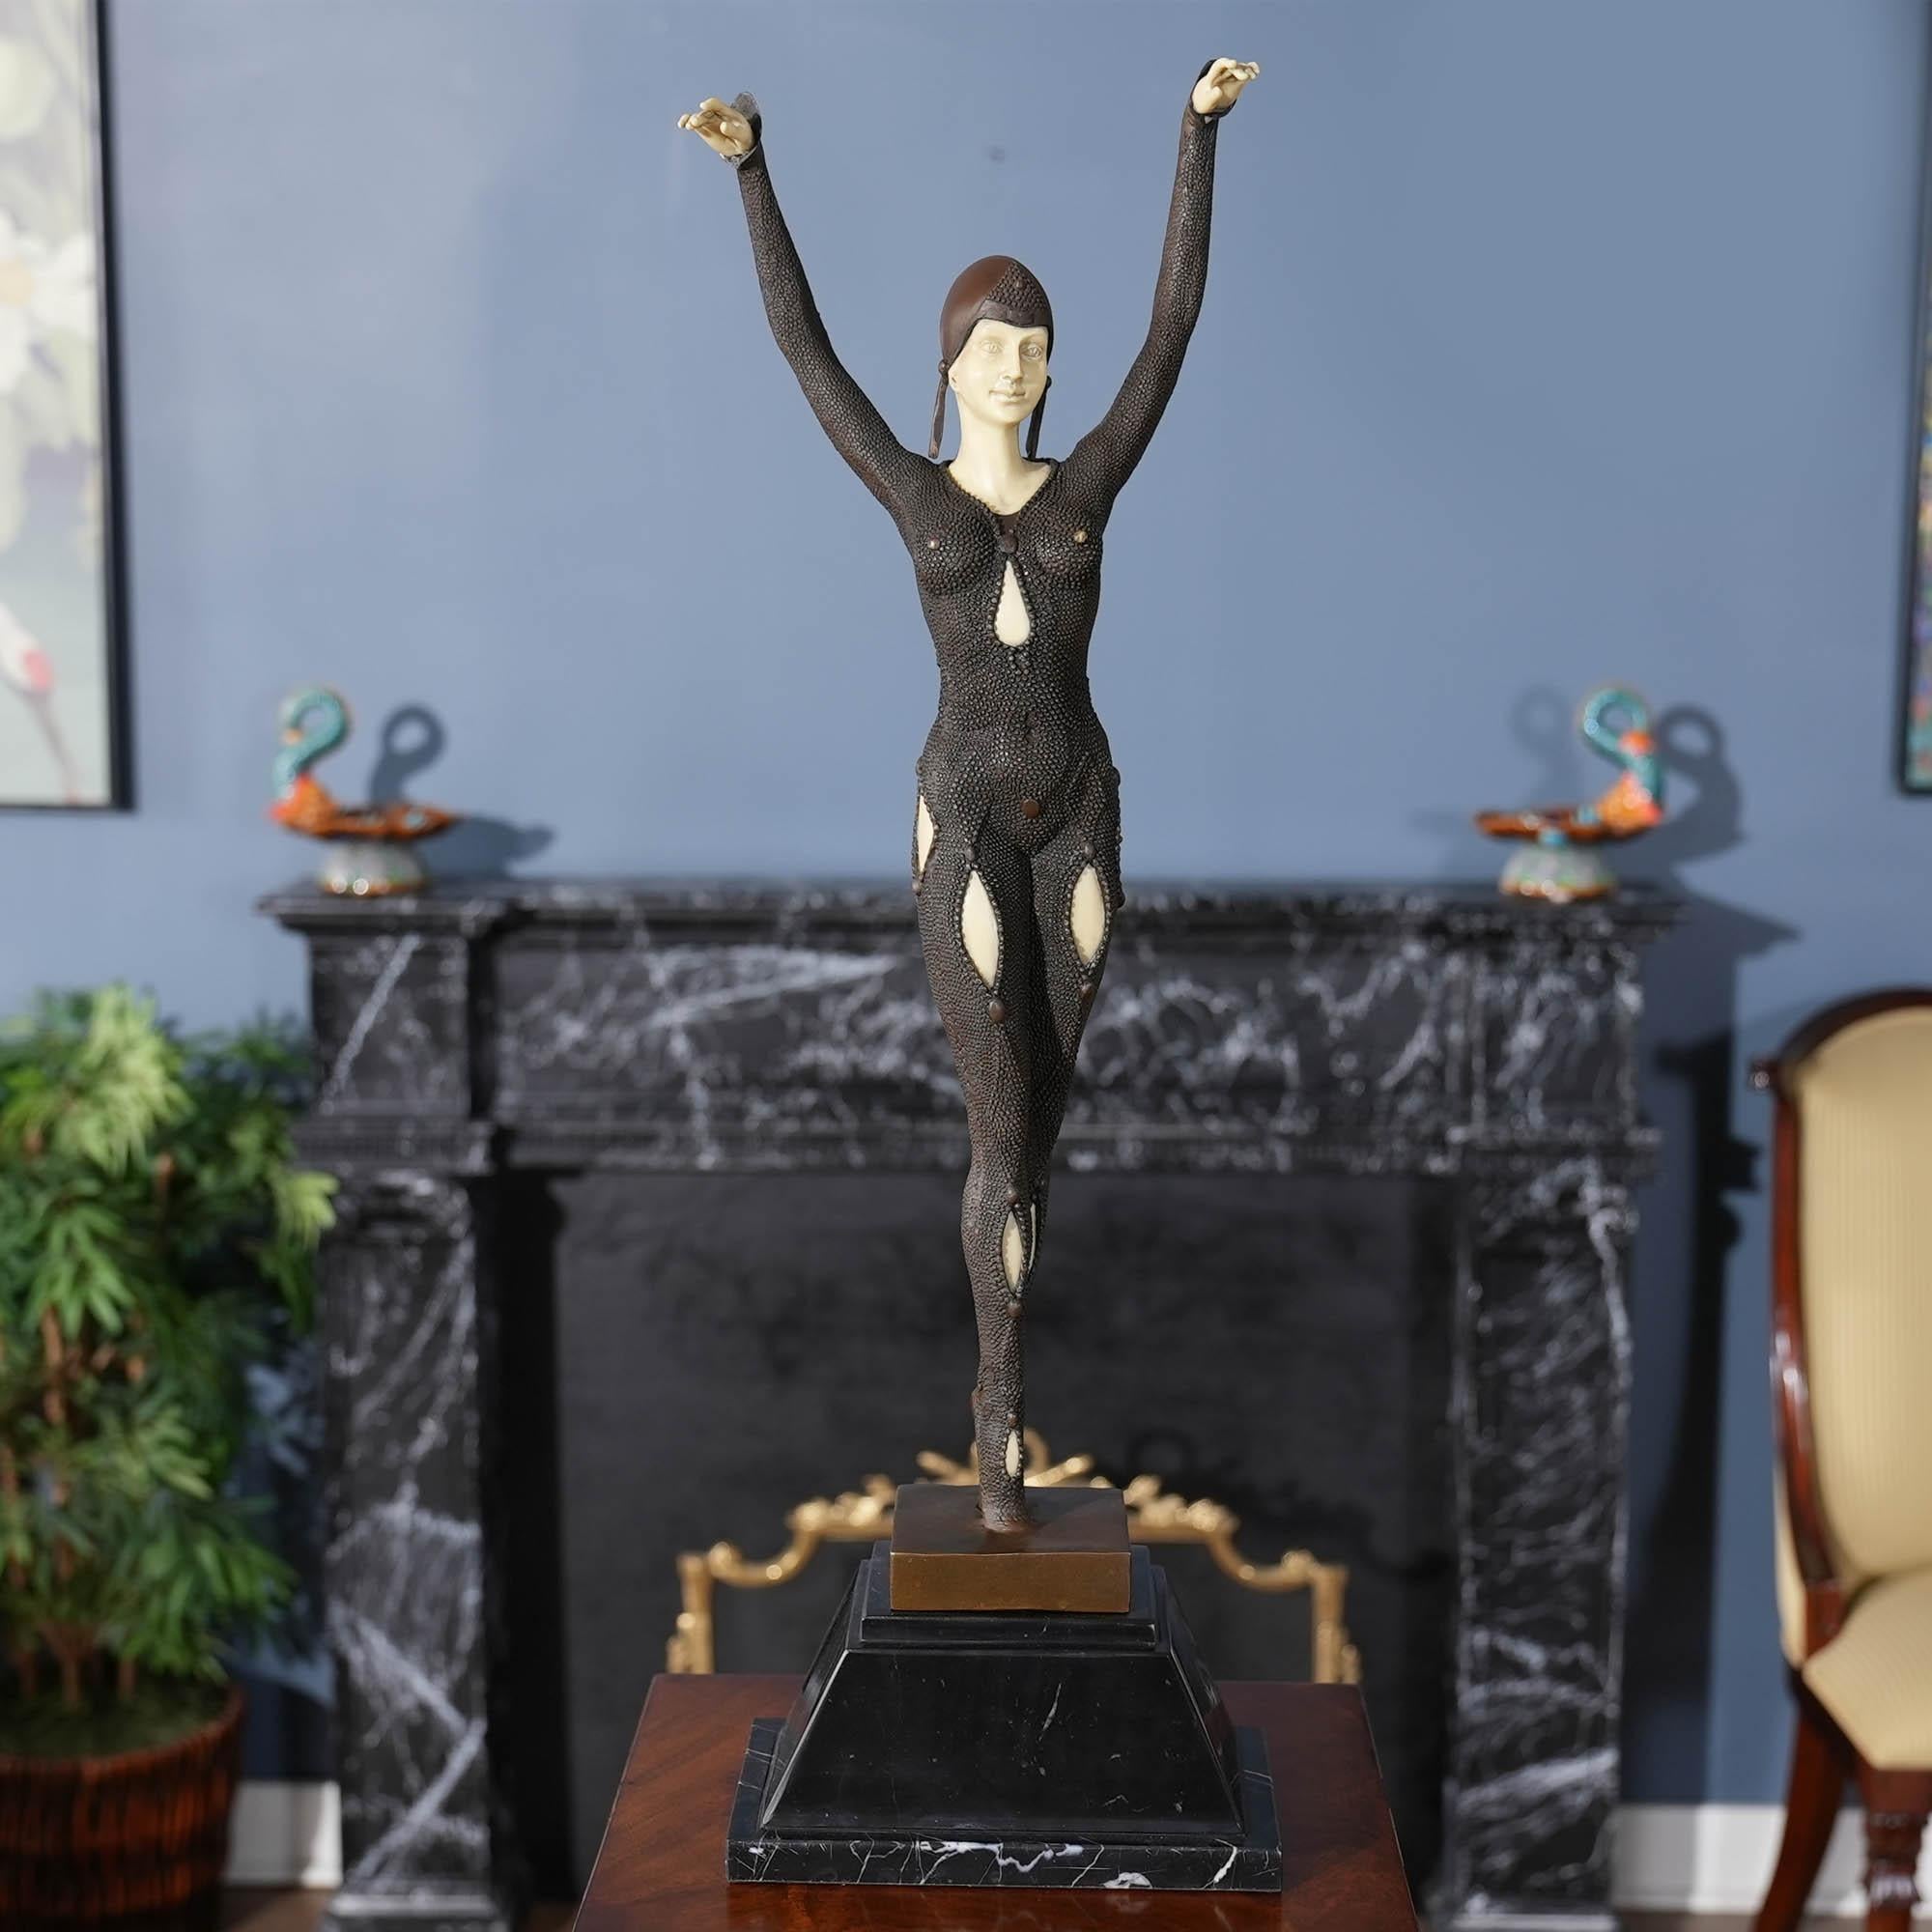 Die Pariser Tänzerin aus Bronze auf einem Marmorsockel ist selbst im Stillstand anmutig und passt in jede Umgebung. Die Bronzestatue der Pariser Tänzerin wurde im traditionellen Wachsausschmelzverfahren gegossen und mit handgefertigten Details